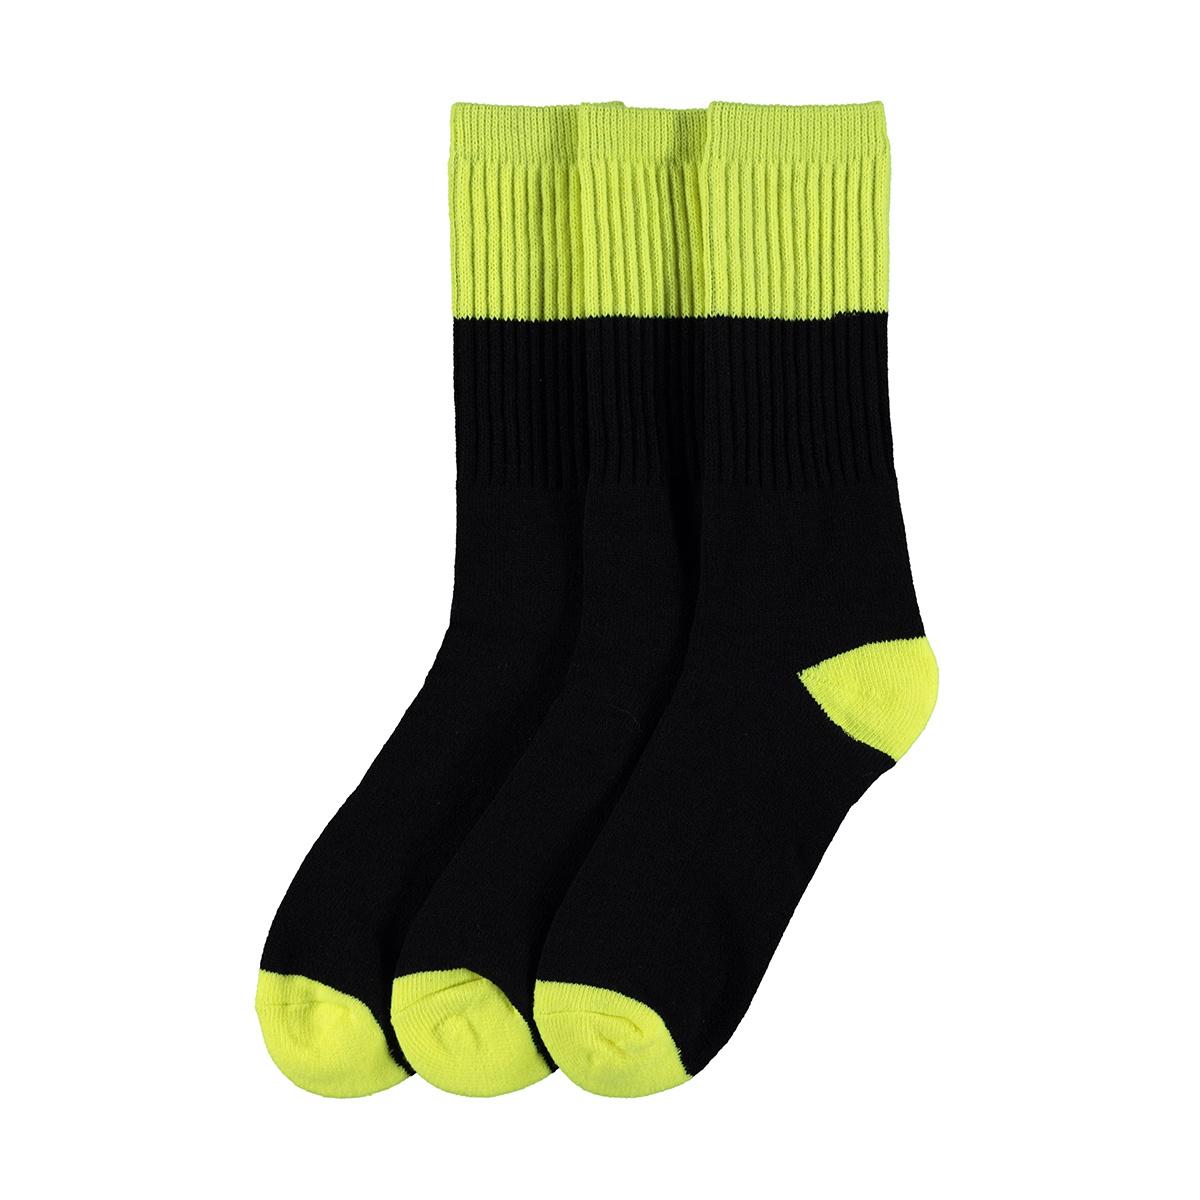 3 Pack Work Socks | Kmart